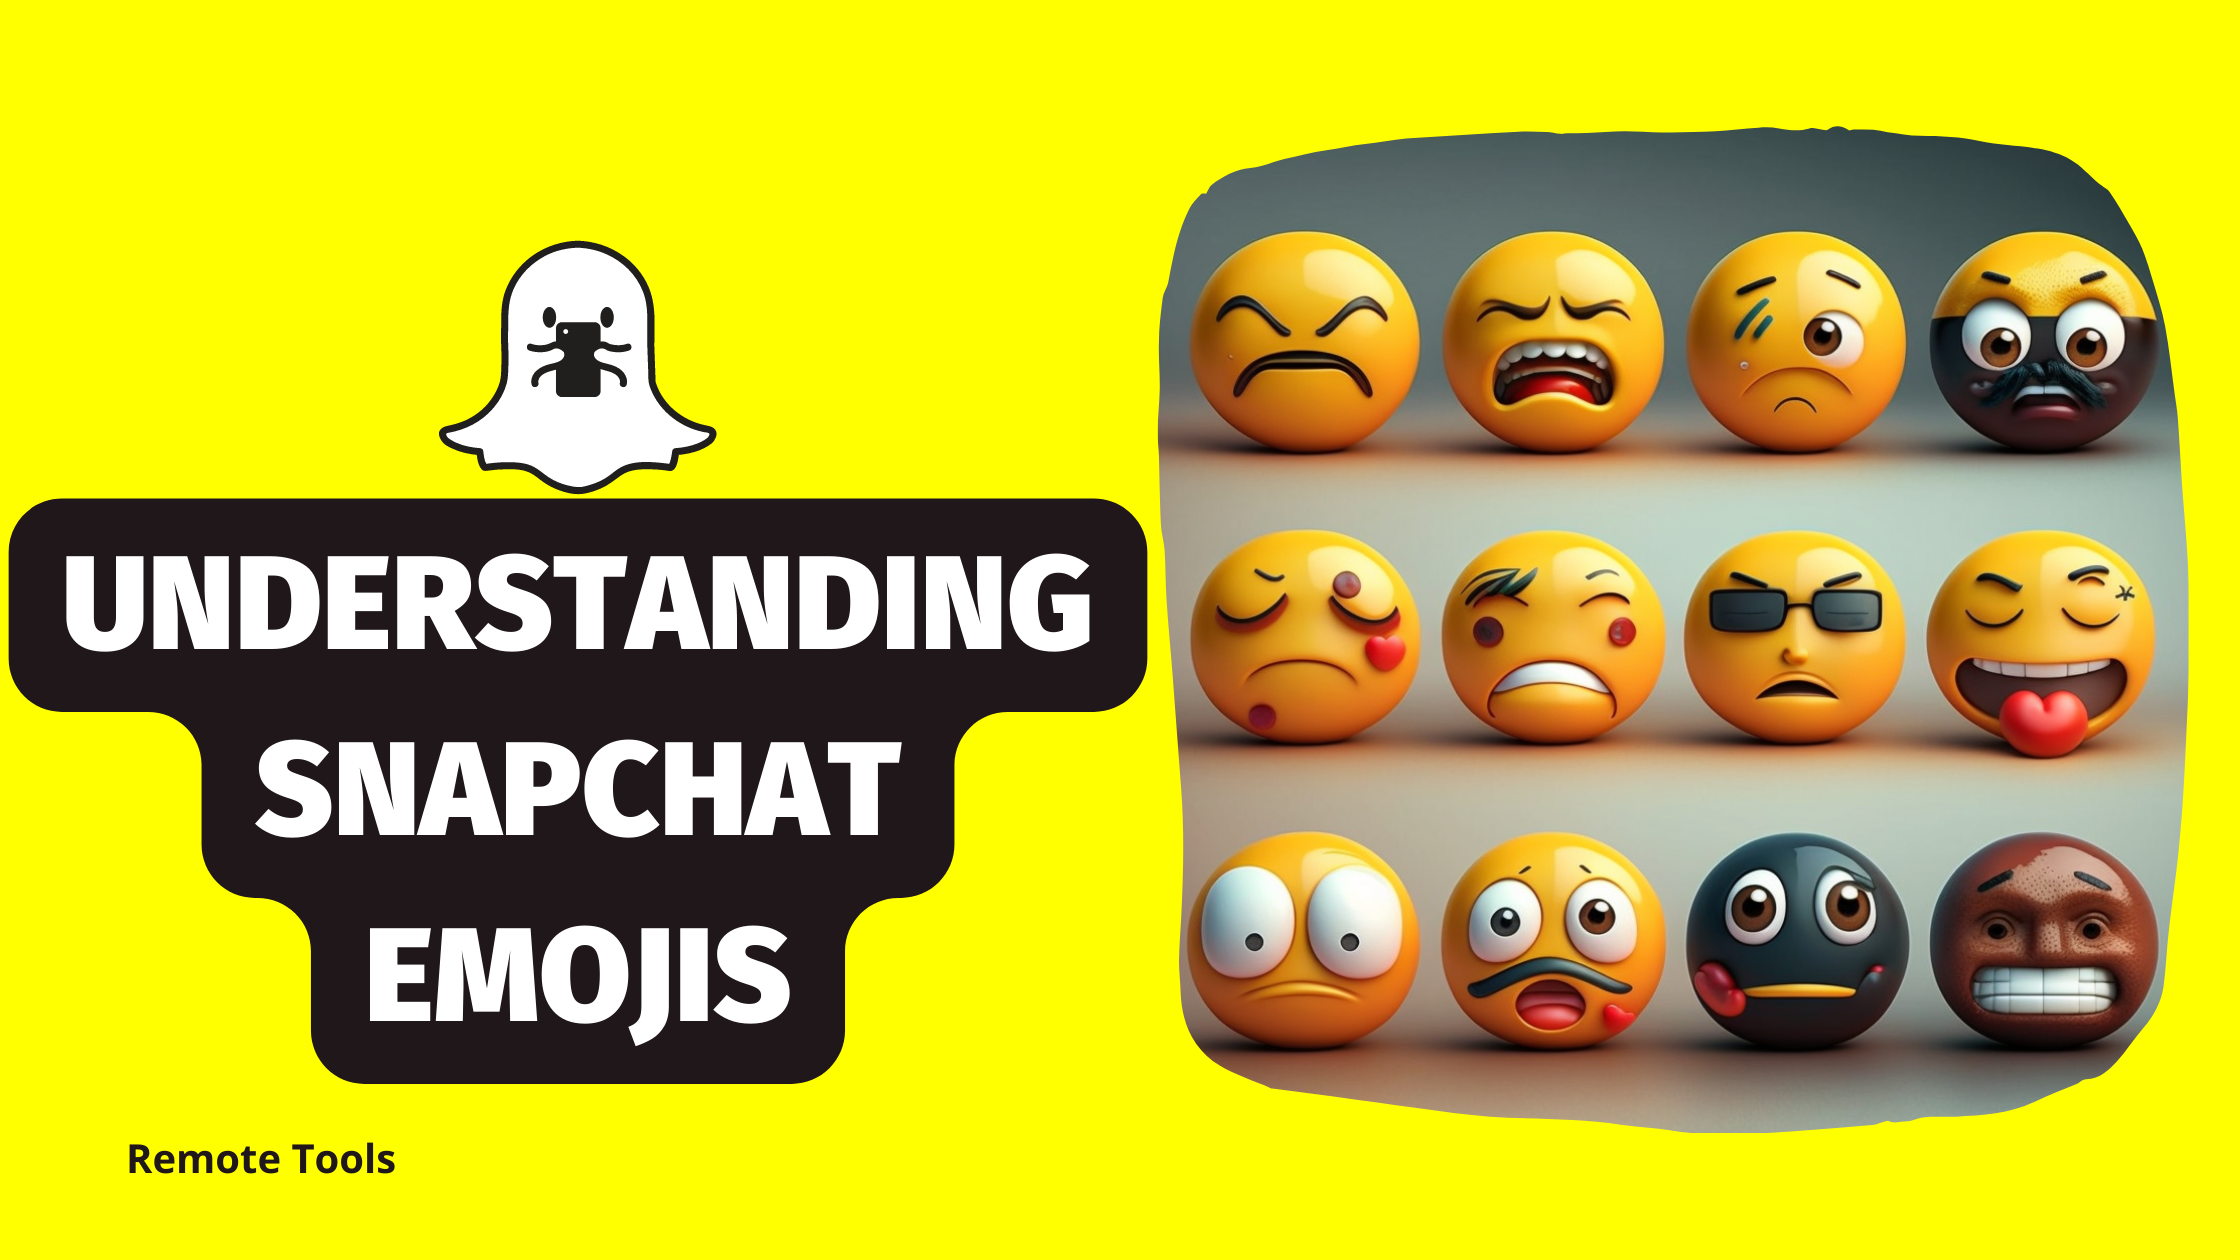 遠程工具分享您應該知道的有關Snapchat表情符號的一切